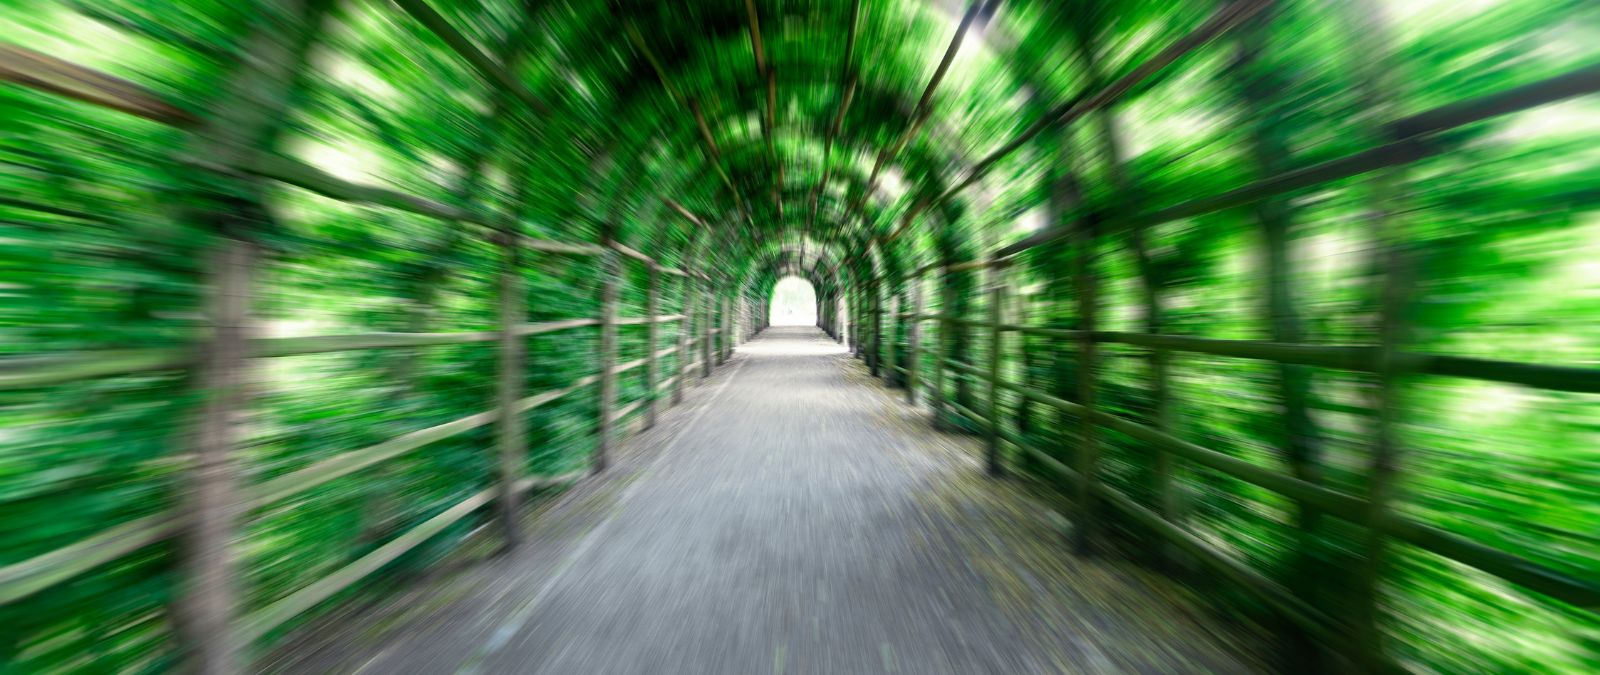 Tunnelblick: Ein langer grüner Tunnel.